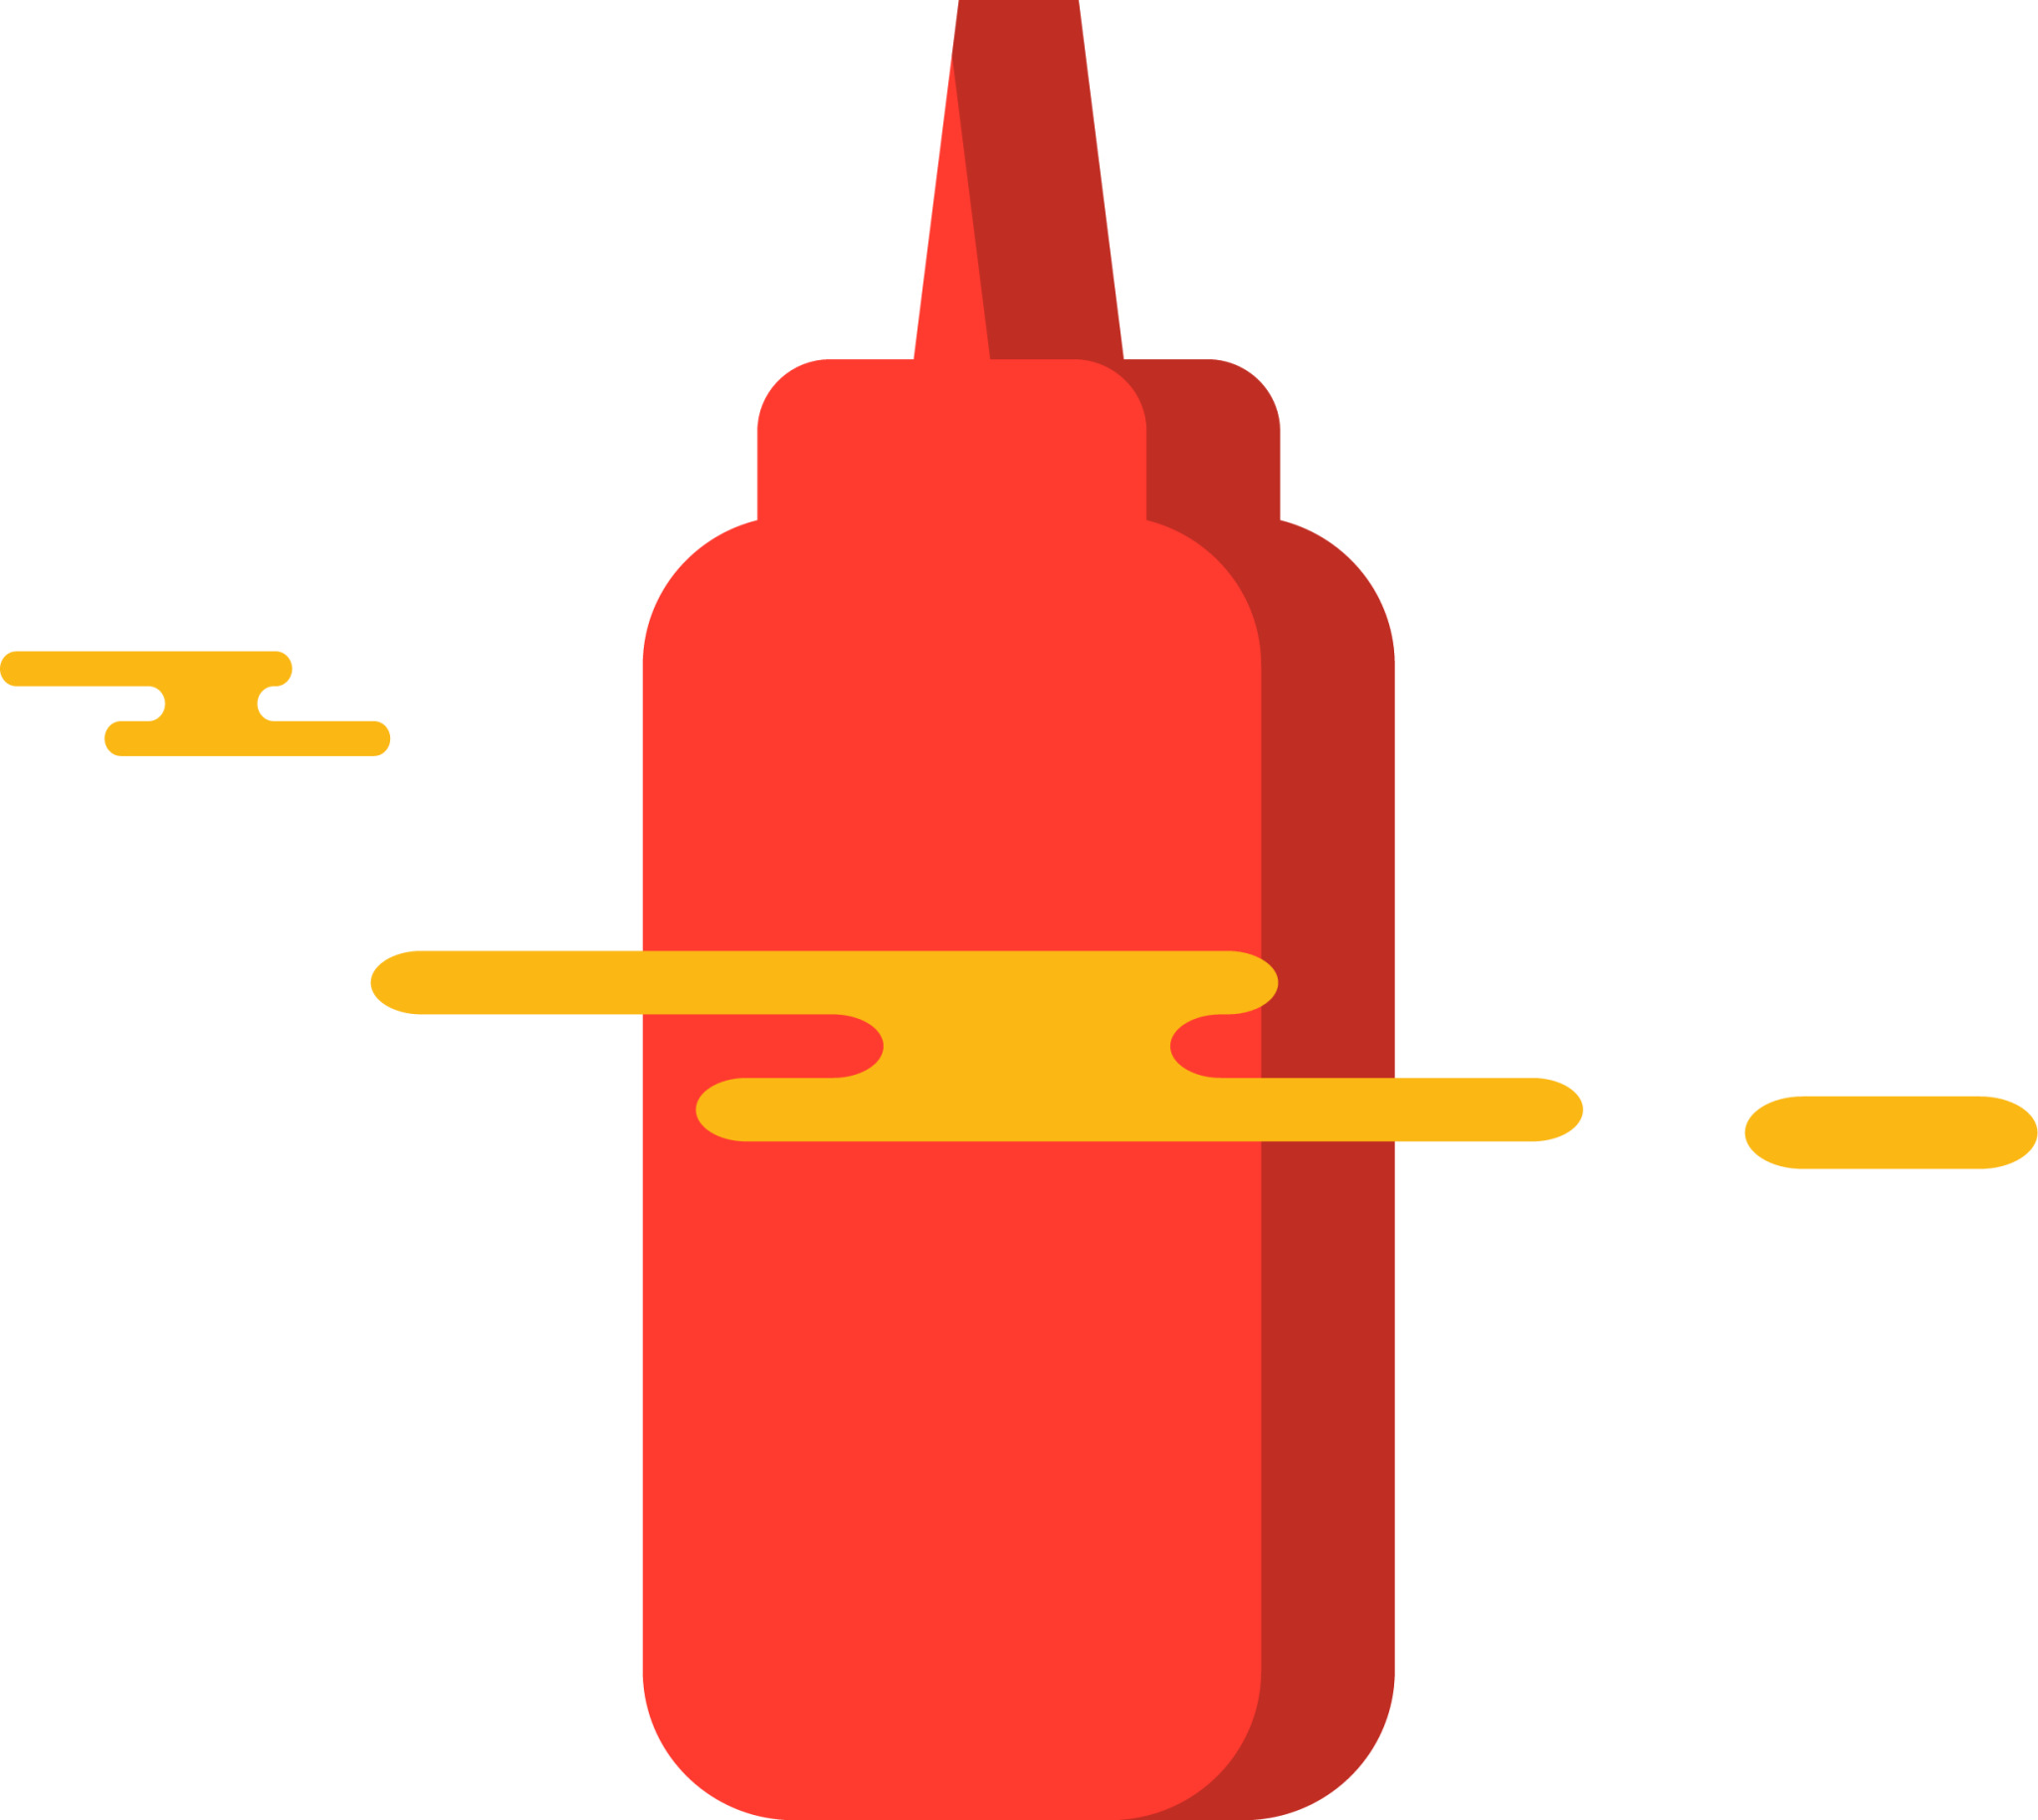 ketchup bottle illustration